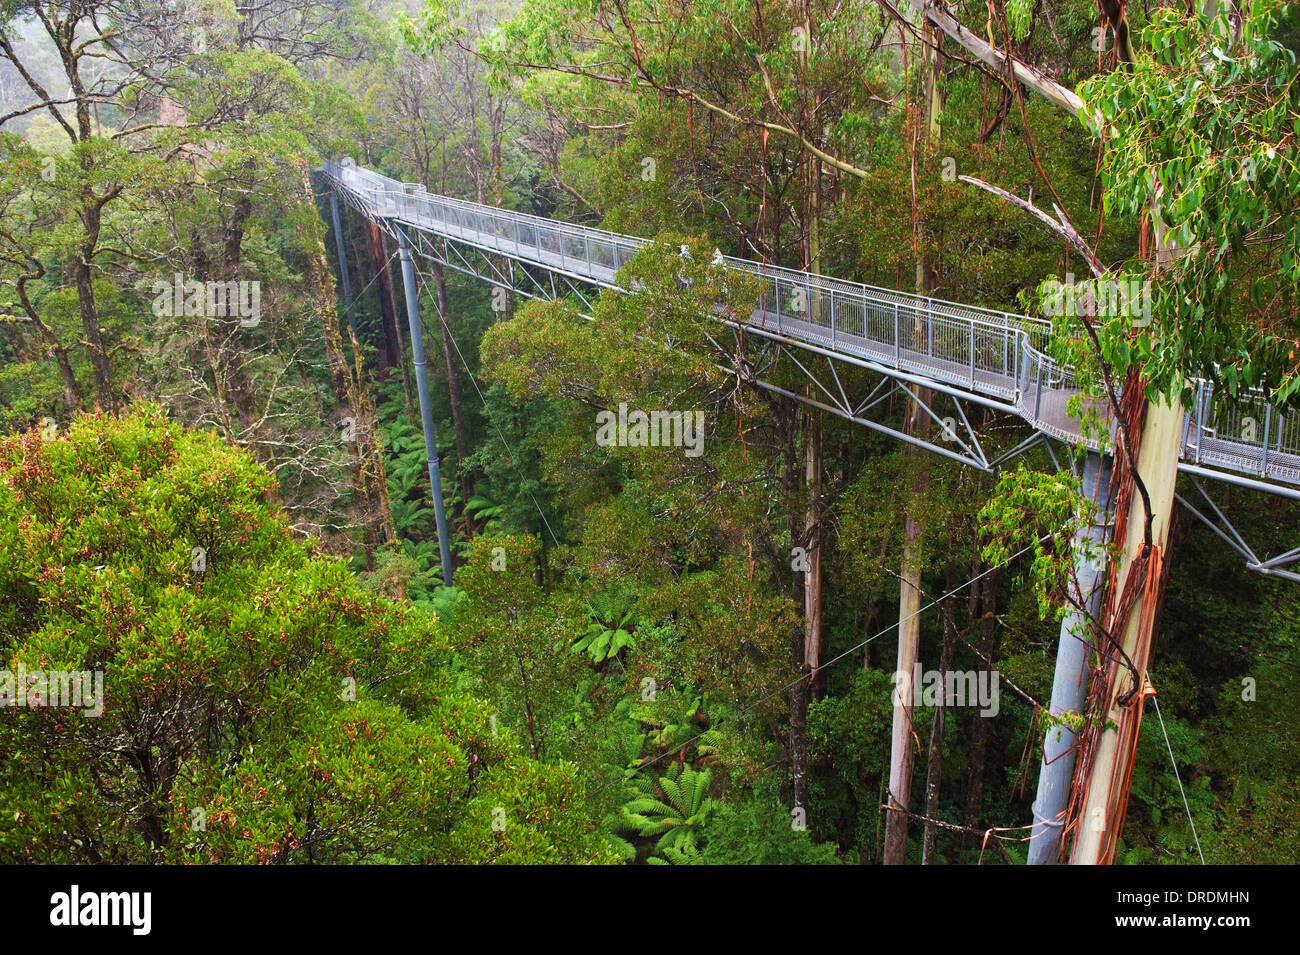 La passerelle en acier Otway Fly dans la forêt tropicale jusqu'à 30 mètres au-dessus du niveau du sol,Great Ocean Road, l'Australie Banque D'Images